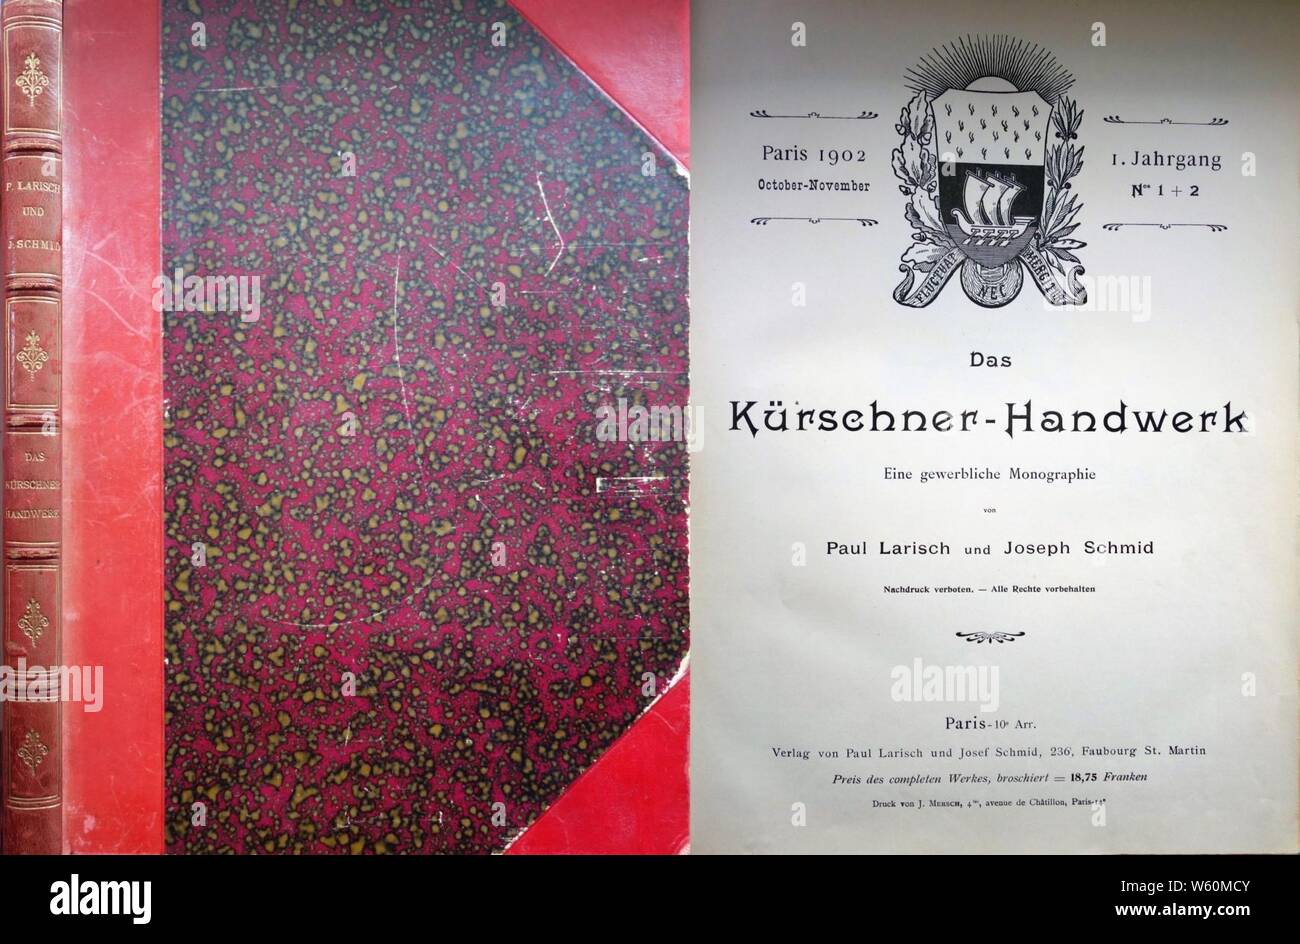 Das Kürschner-Handwerk, Paul Larisch und Joseph Schmidt, Paris 1901-1904. Stock Photo